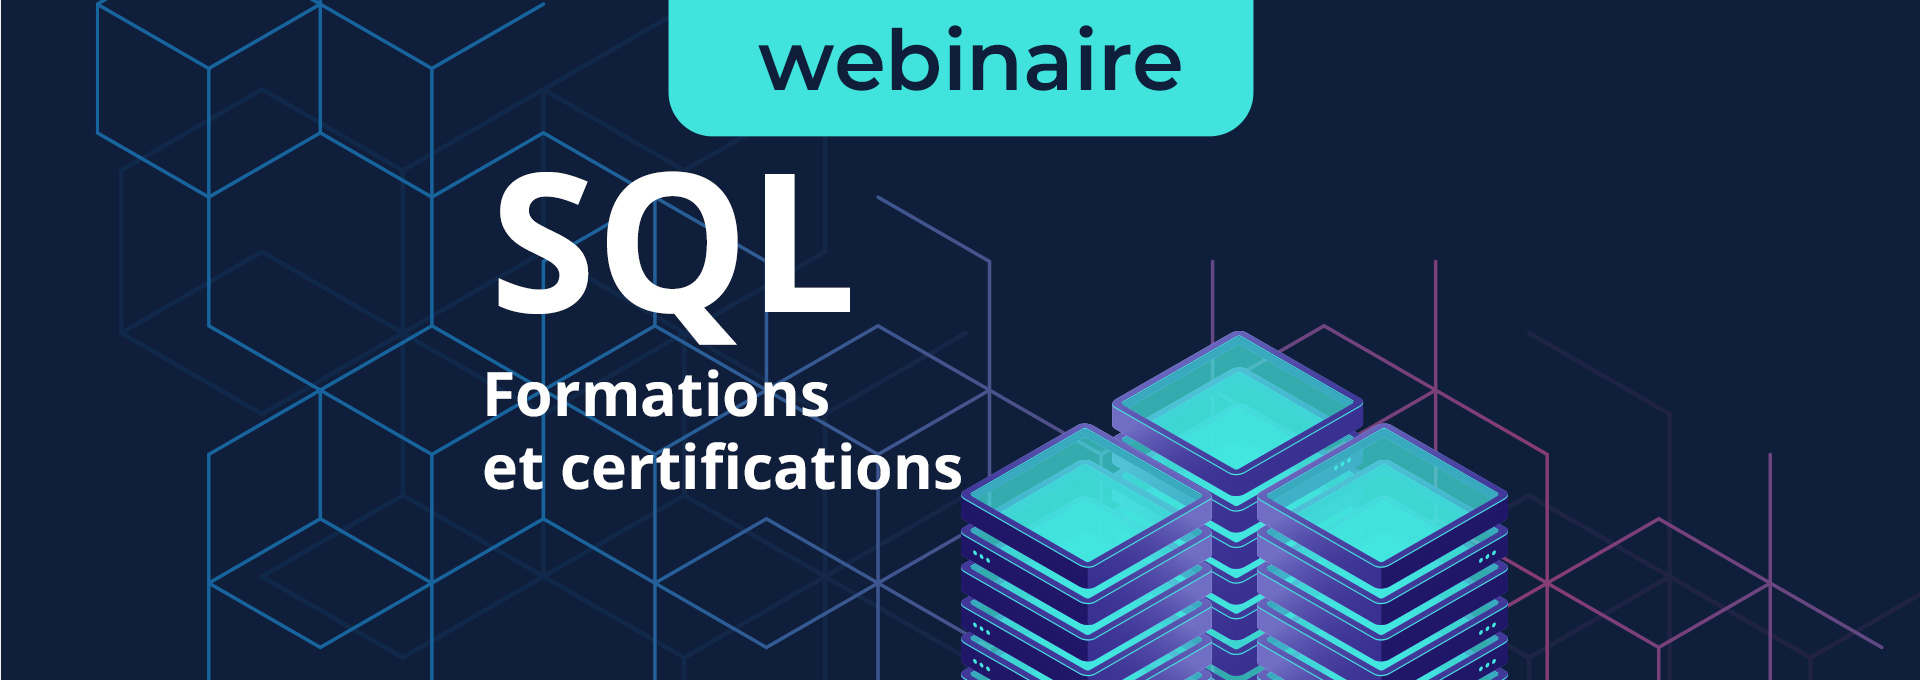 Webinaire SQL formations et certifications ENI